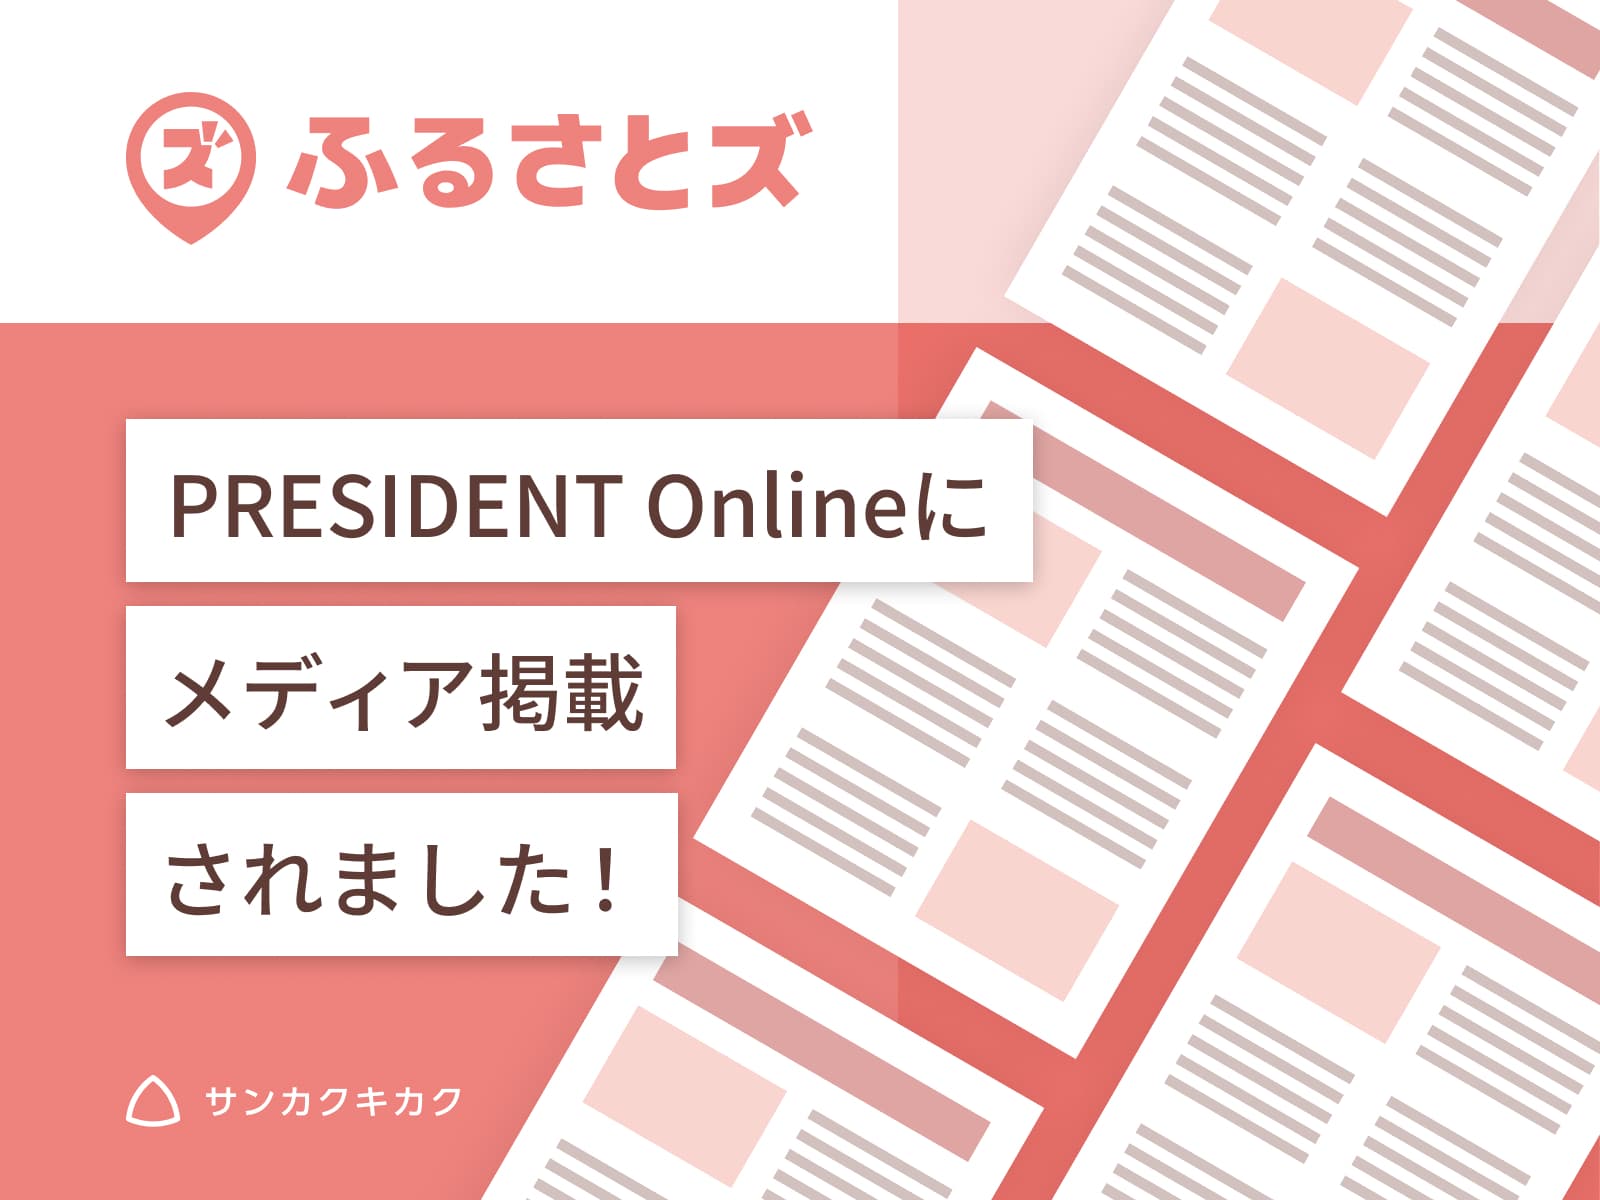 ふるさとズ｜寄附総額1億円突破のプレスリリースがPRESIDENT Onlineで掲載されました。